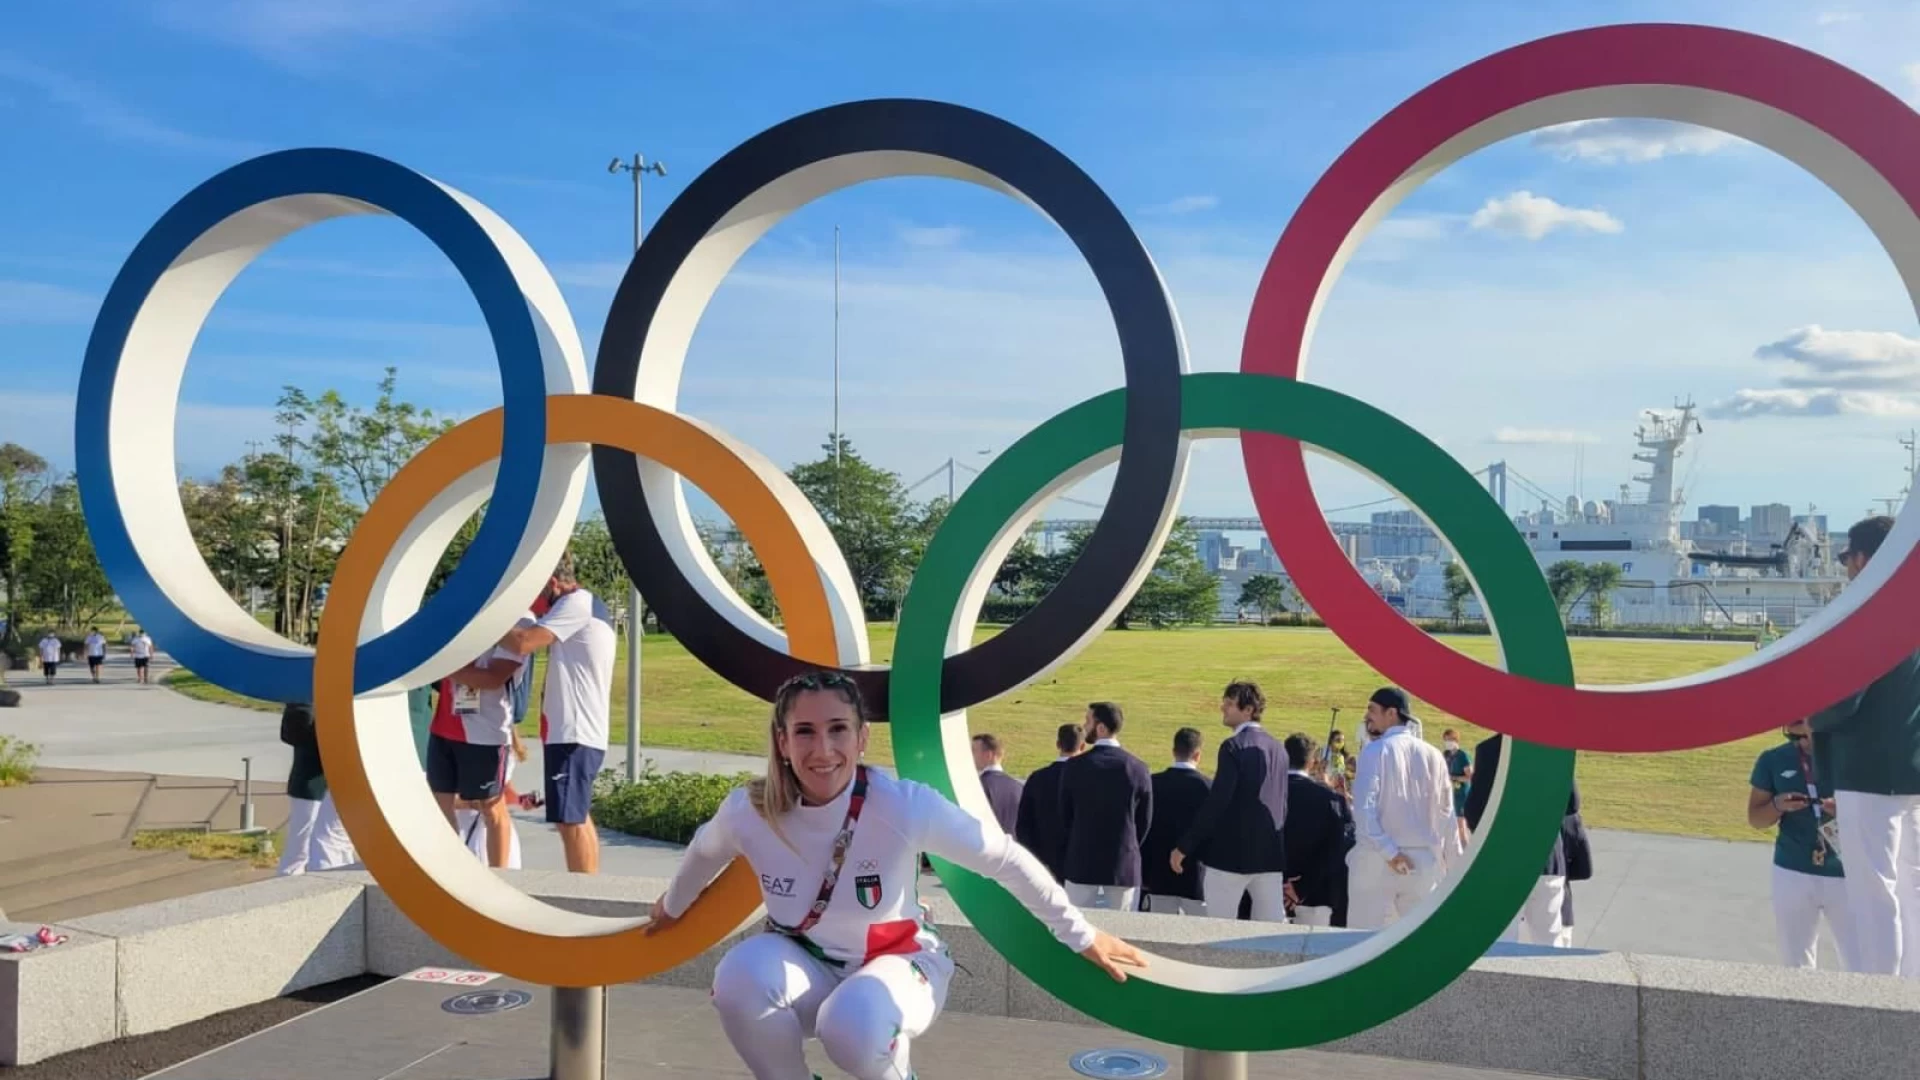 Rocchetta a Volturno: cittadinanza onoraria in arrivo per Maria Centracchio per la partecipazione alle Olimpiadi